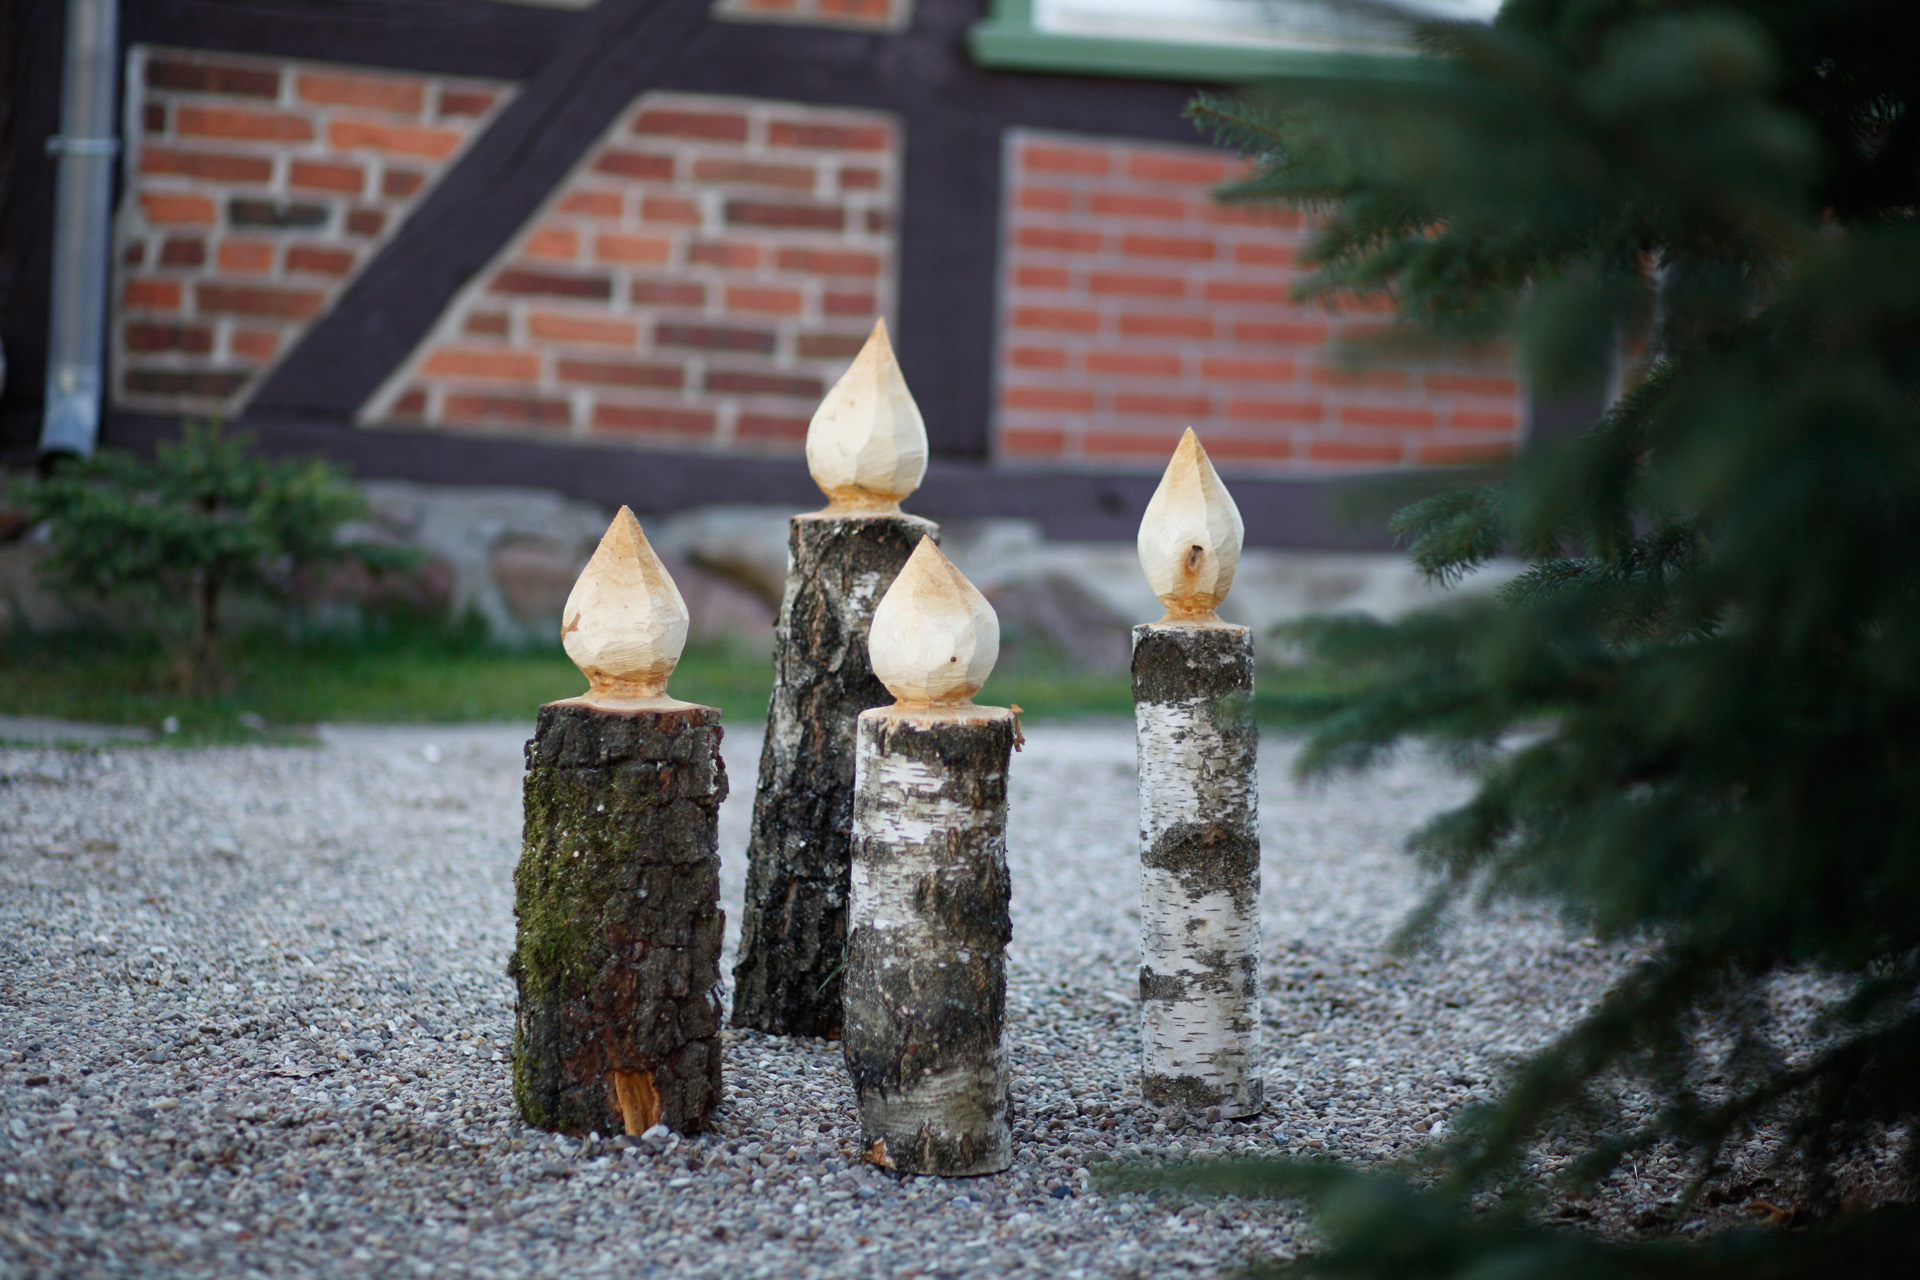 Four DIY wooden candlesticks standing on a path beside a fir tree